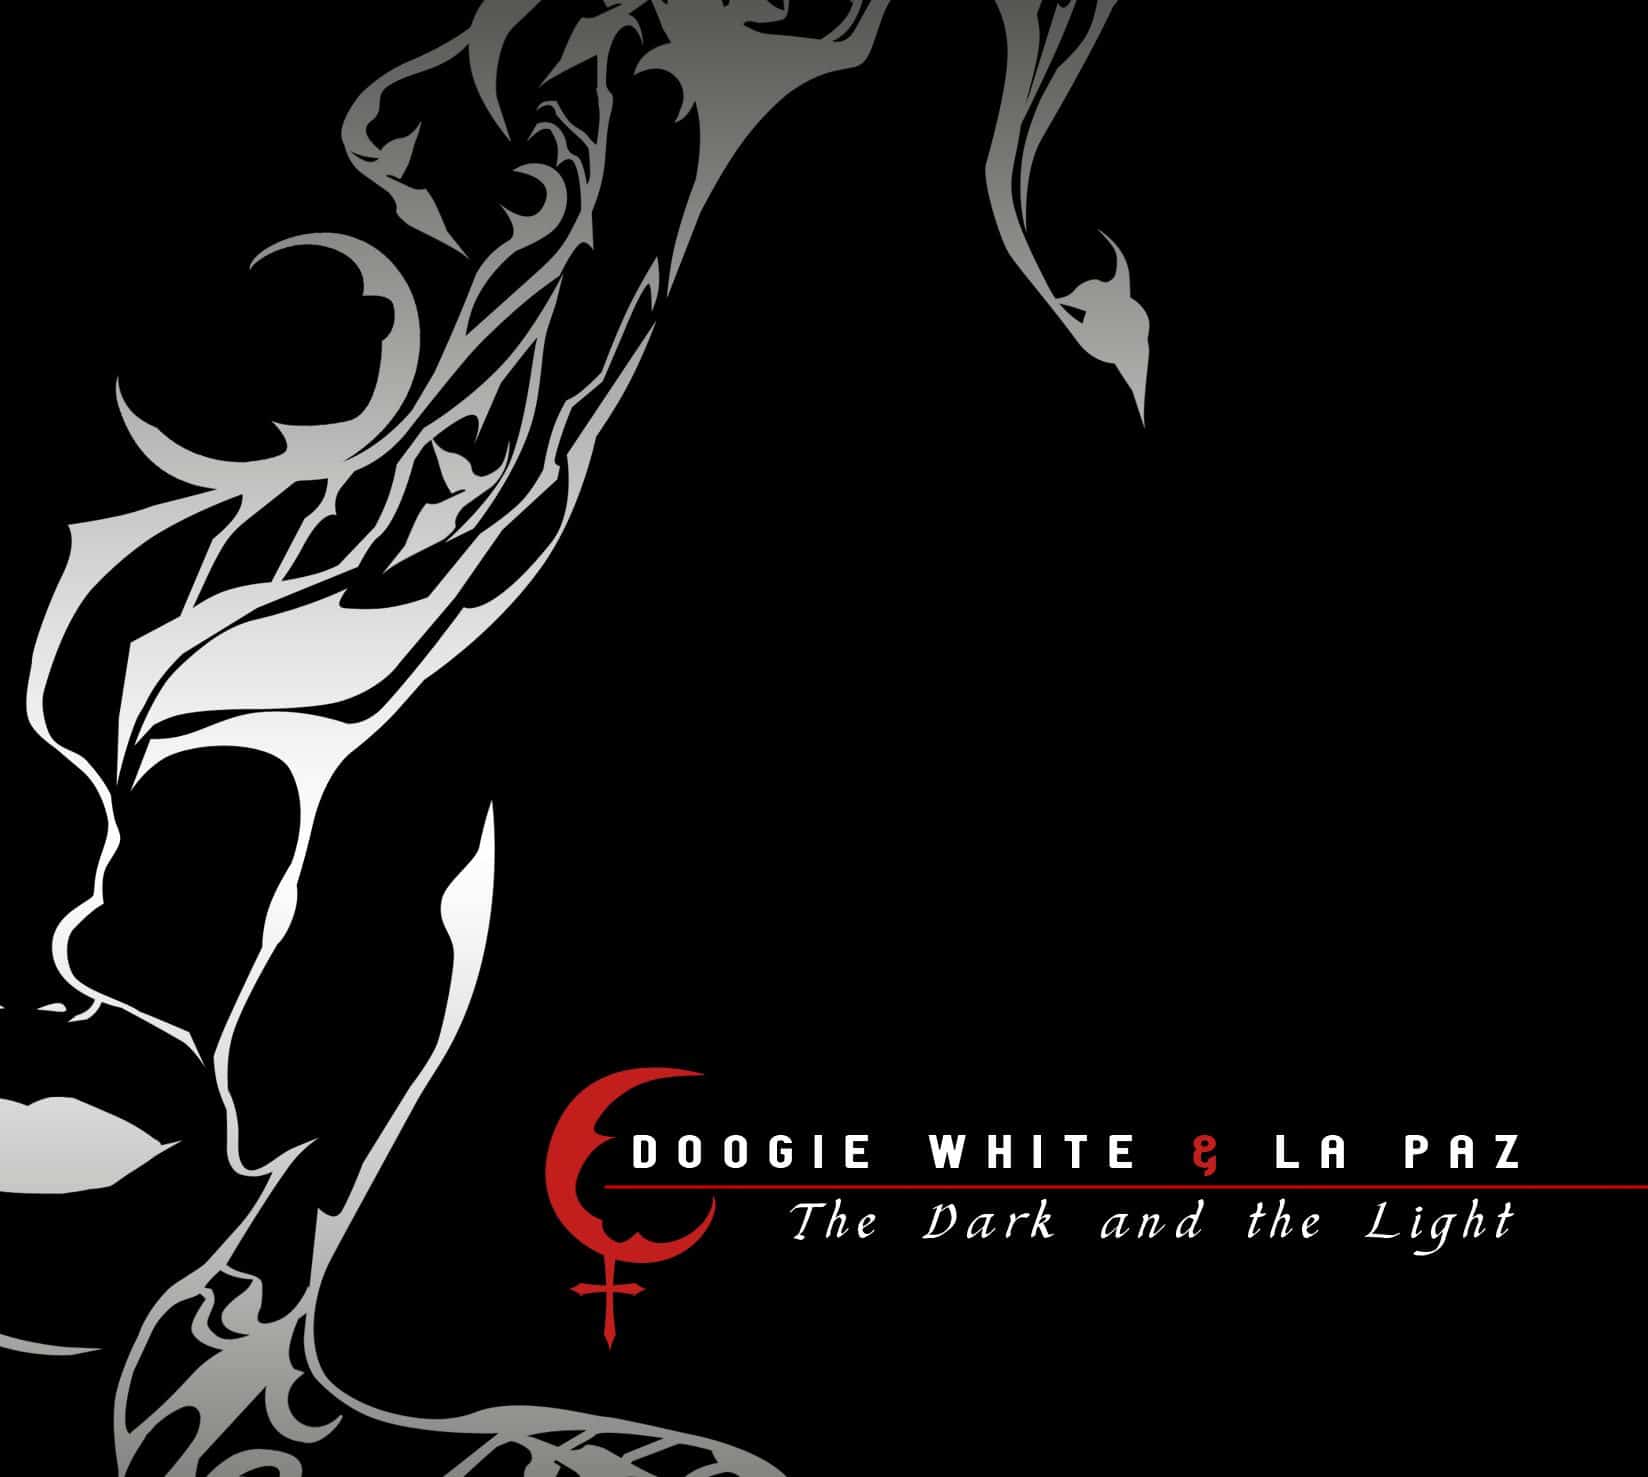 Doogie White & La Paz - posłuchaj nagrania z nowej płyty 